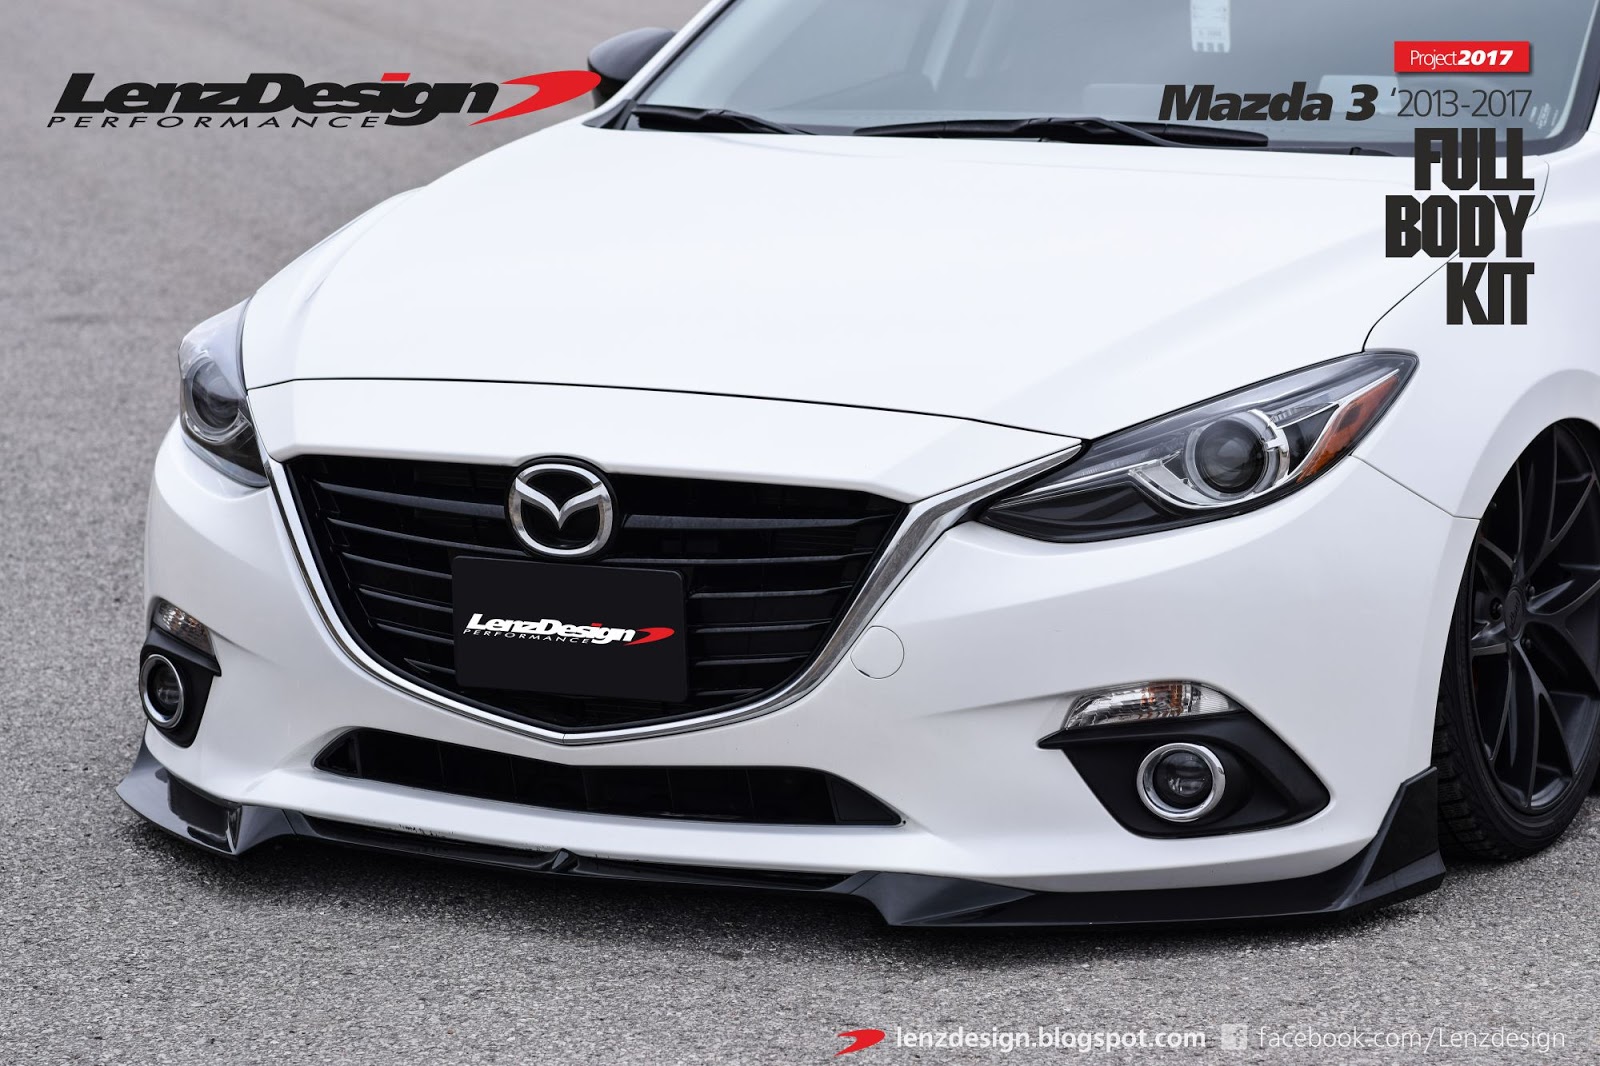 Mazda 3 BM 2013-2017 Lenzdesign Performance Body Kit & Tuning